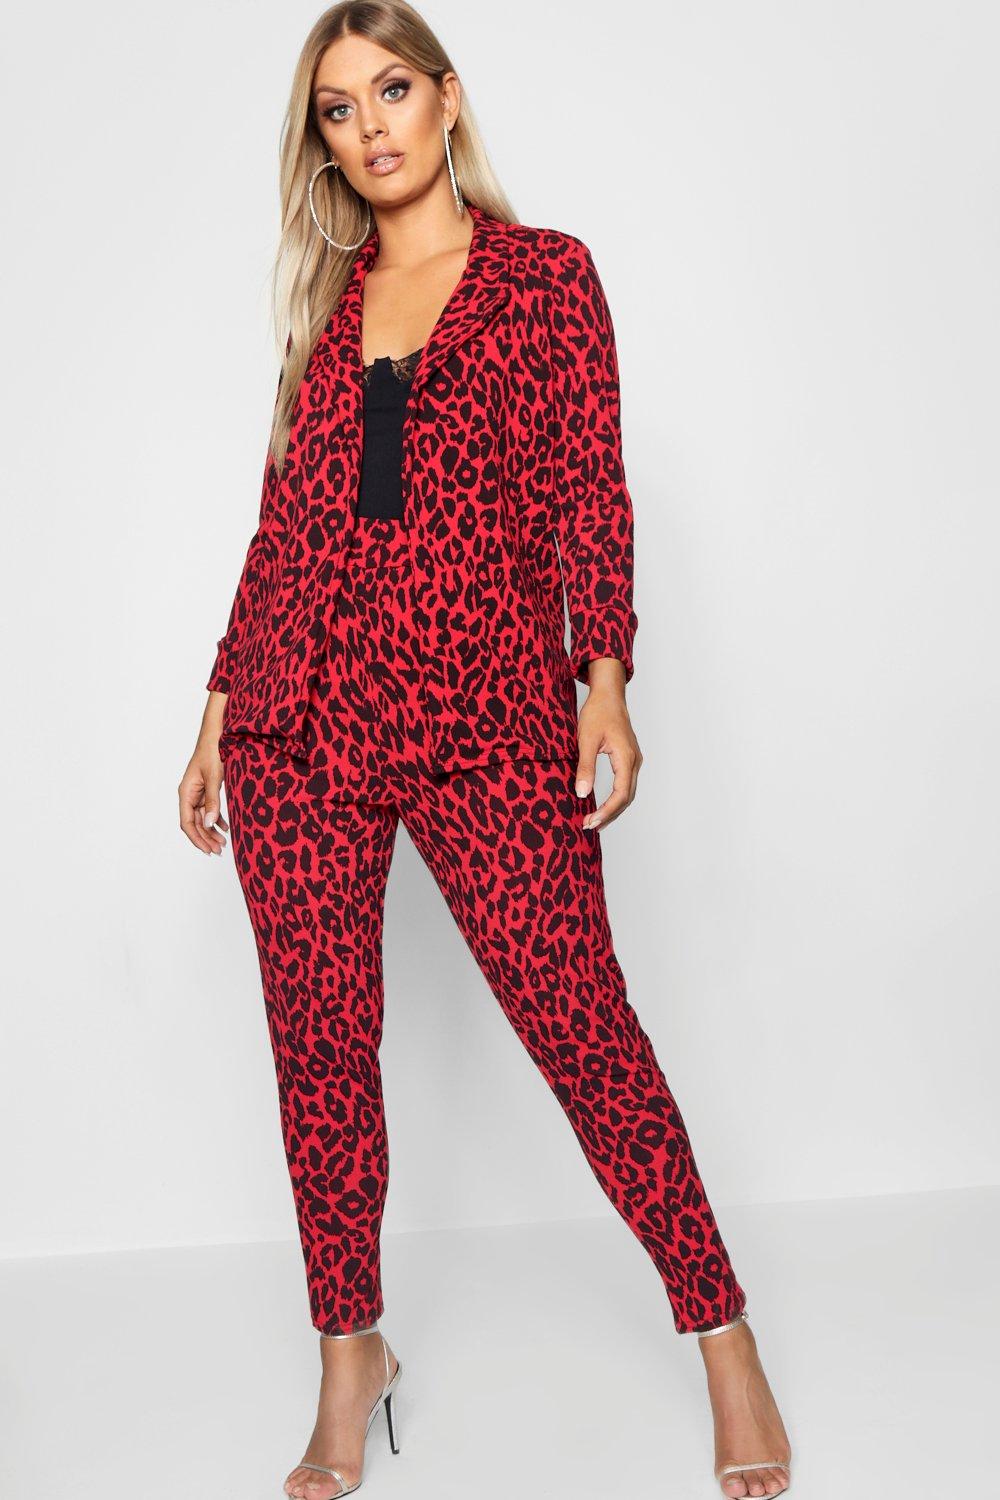 red leopard print suit